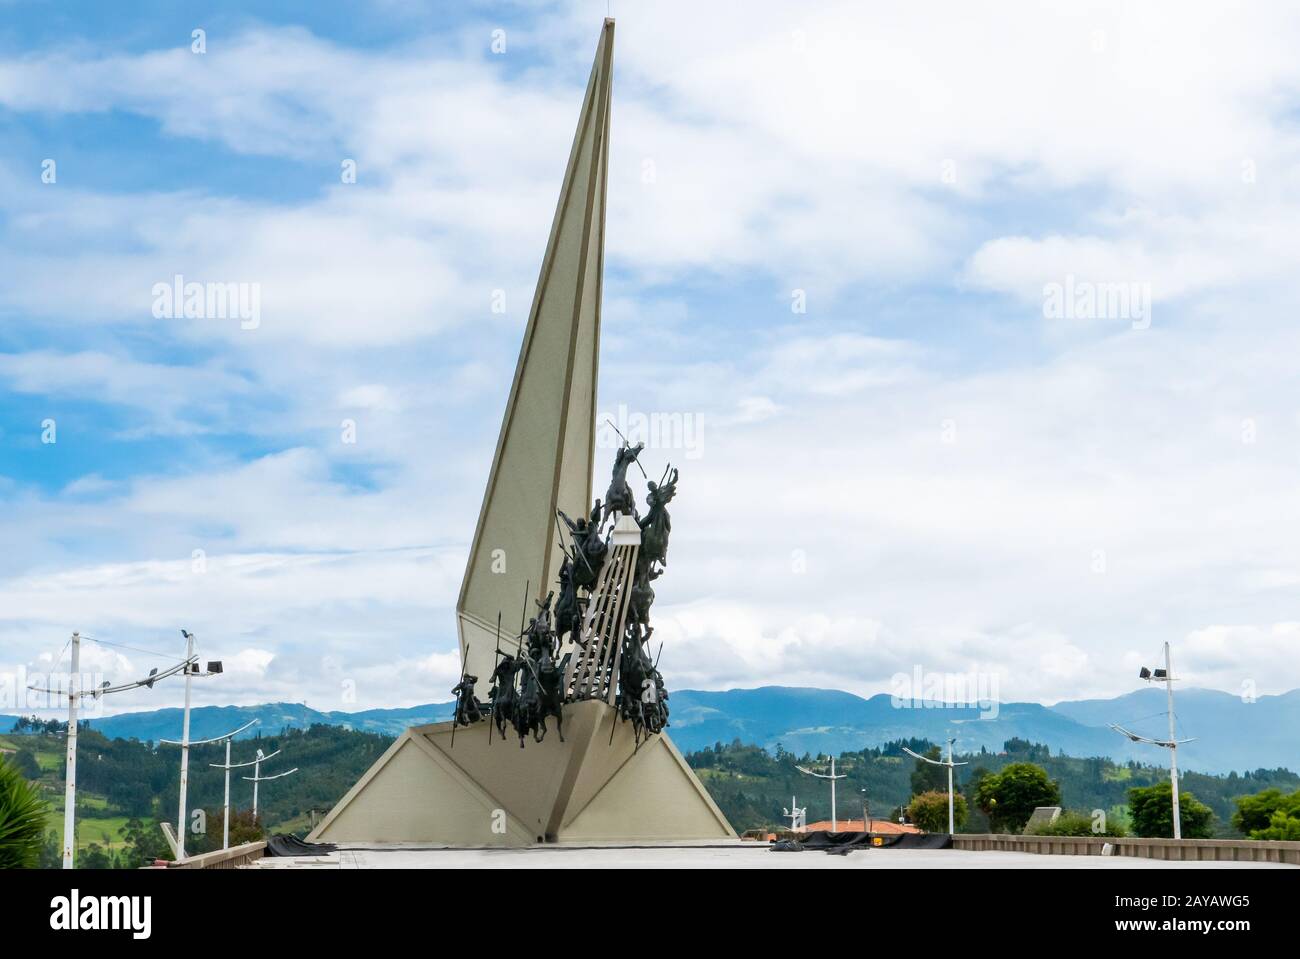 Paipa Colombie Pantano du monument Vargas vue frontale Banque D'Images